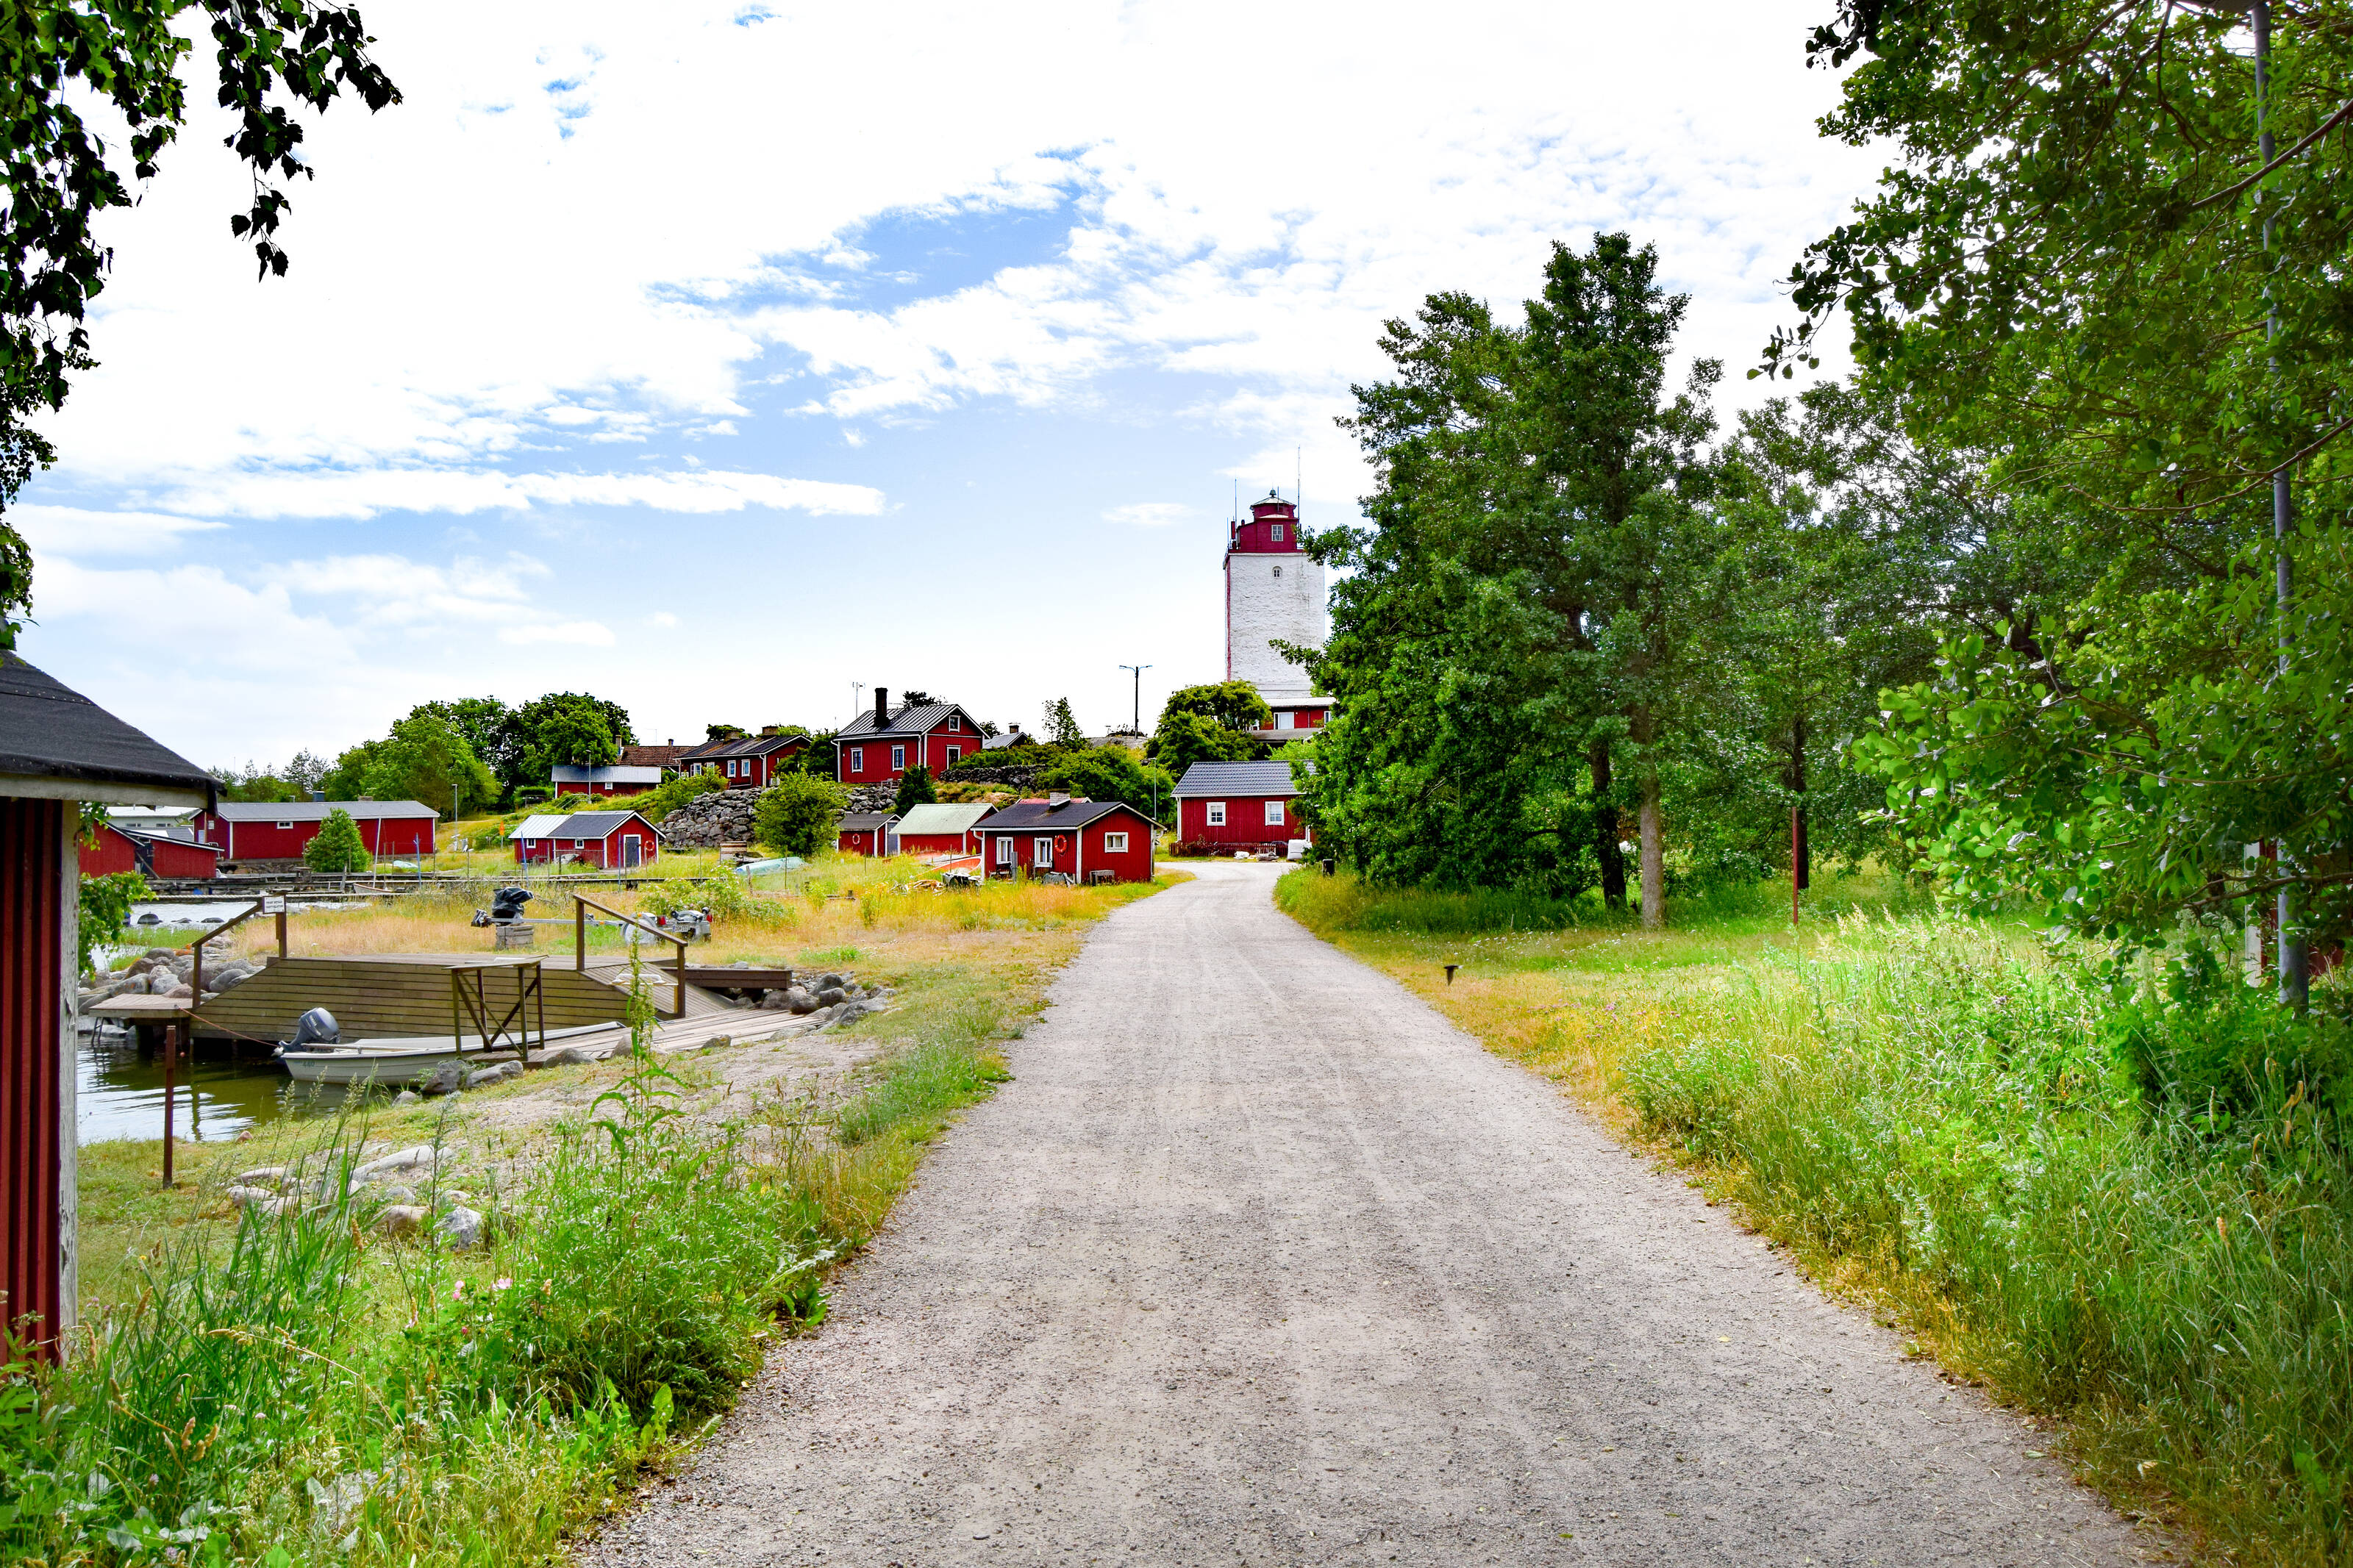 une route de gravier menant à un village idyllique rempli de maisons en bois rouges articulées autour d'un phare rouge